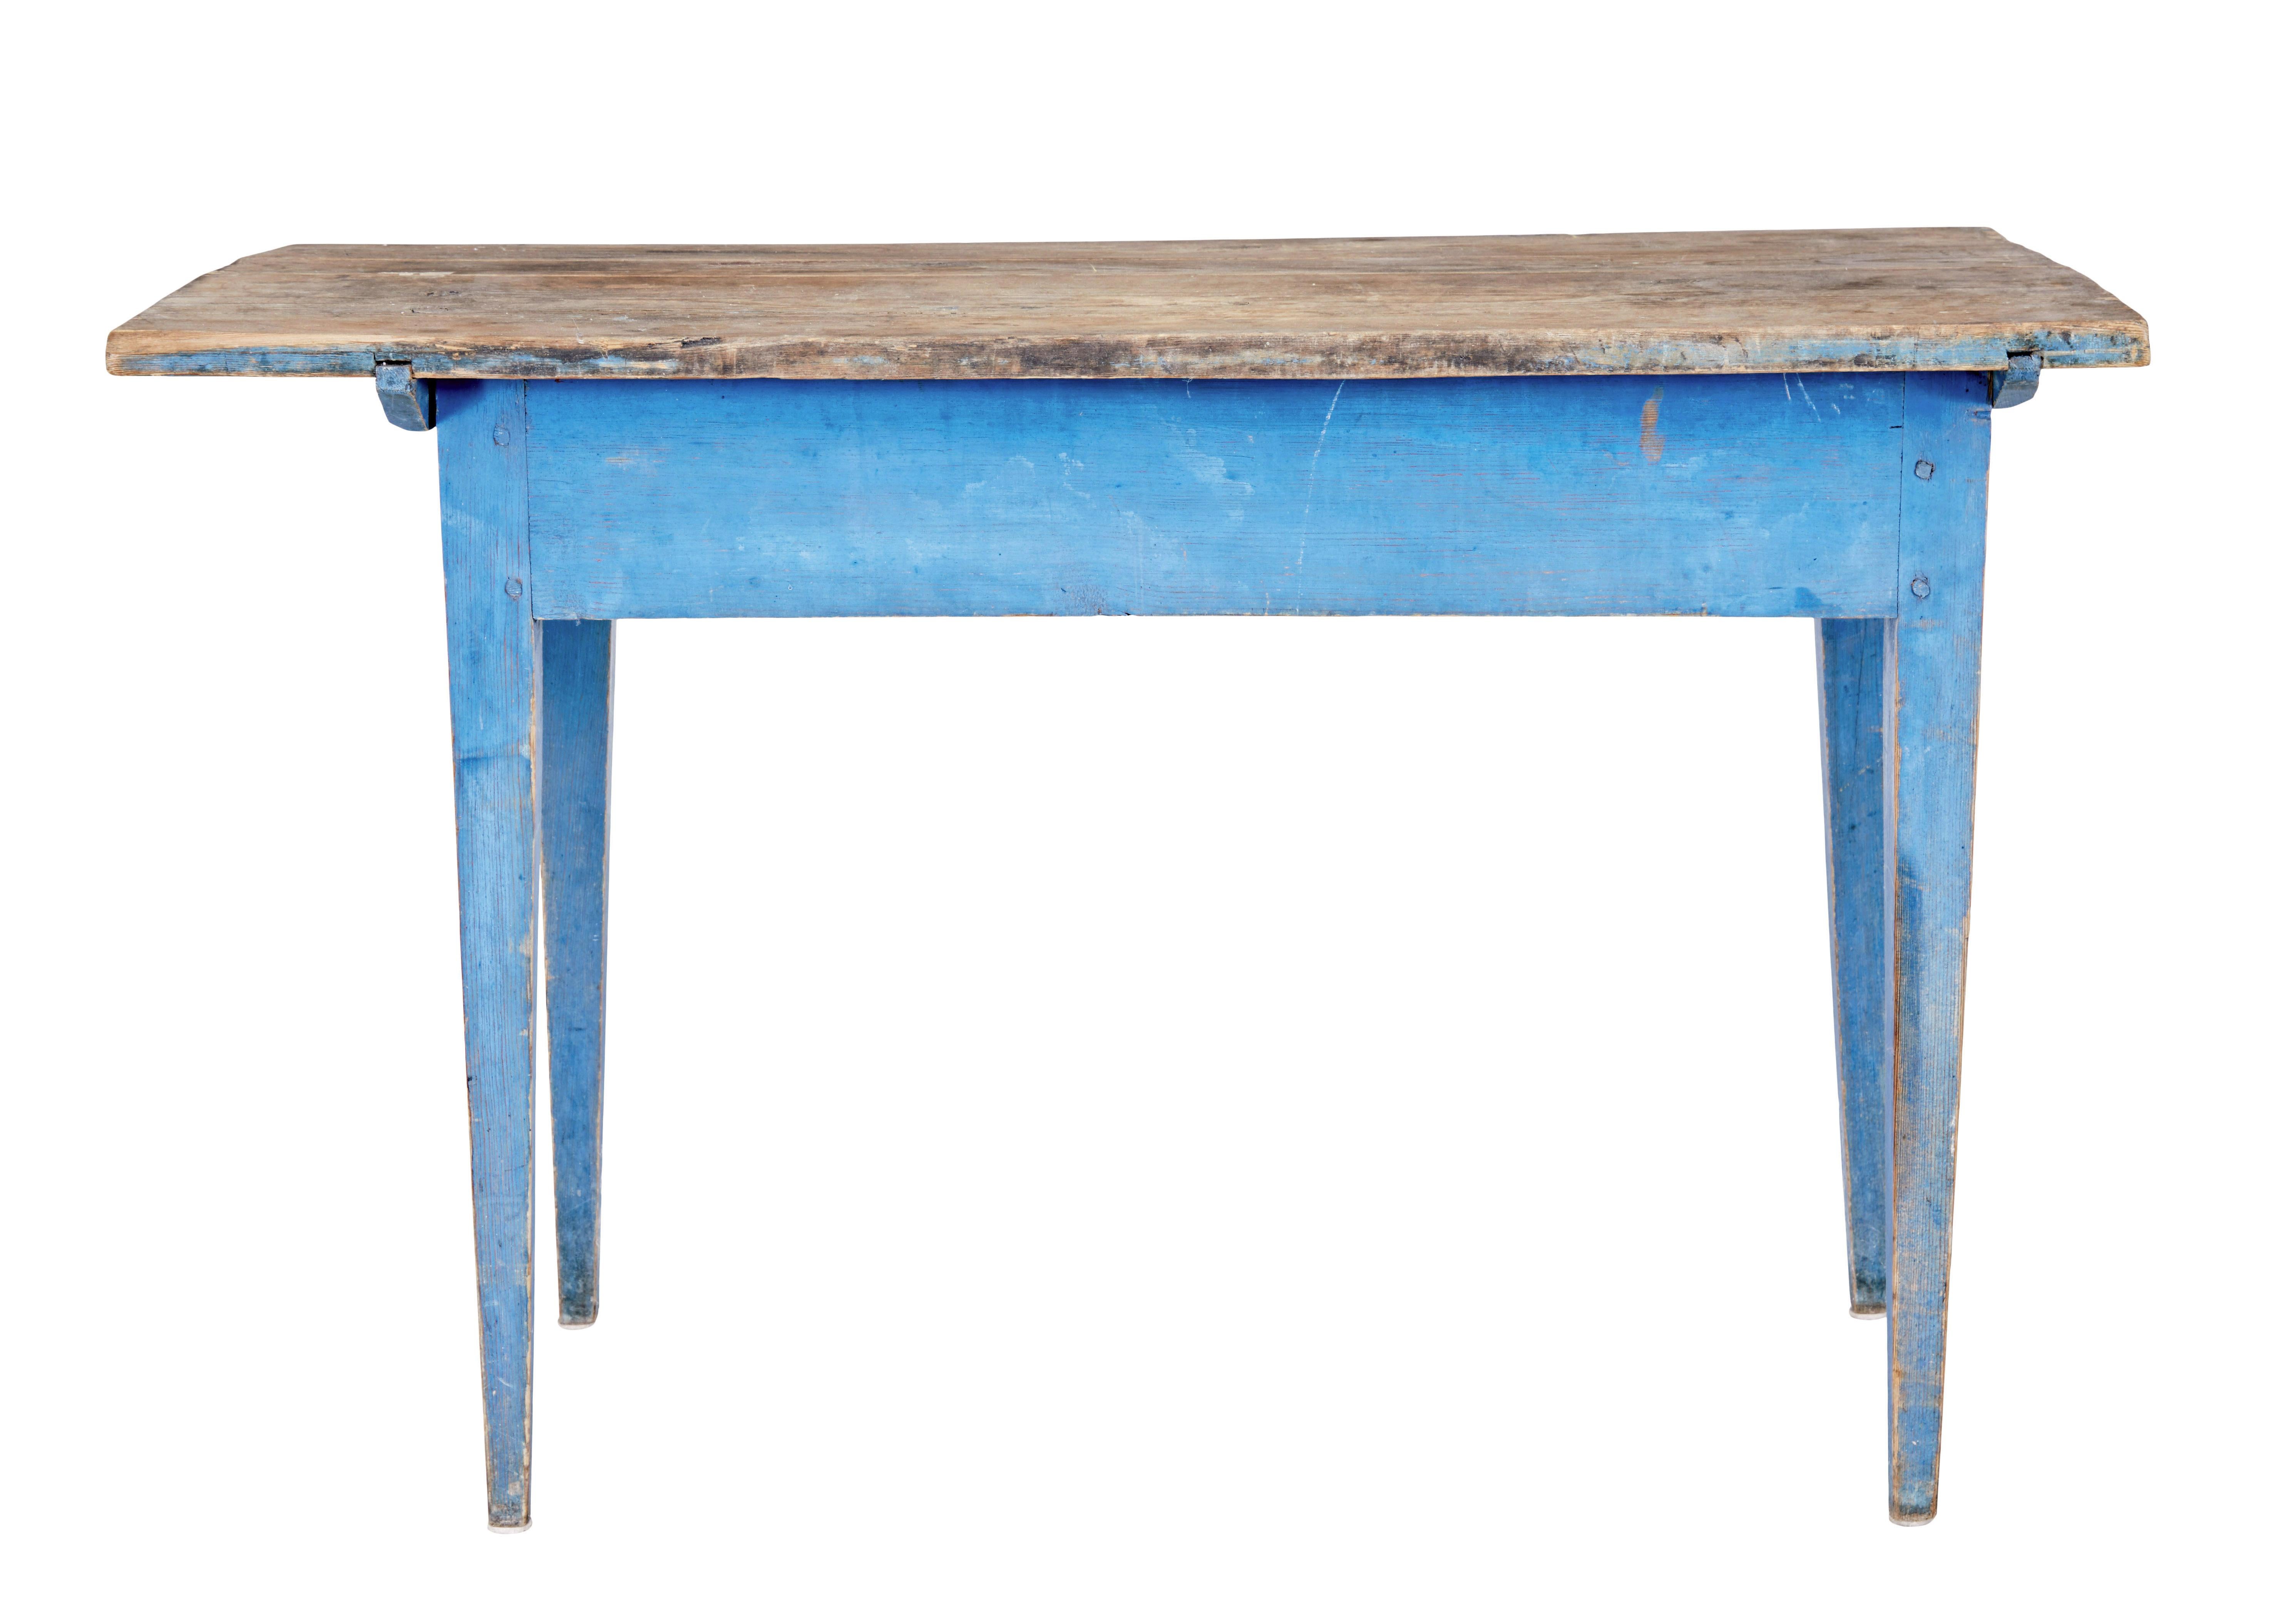 Table d'appoint rustique en pin peint du XIXe siècle, vers 1860.

Table rustique en pin suédois avec plateau original en pin frotté et base peinte en bleu.  Idéal pour une utilisation dans un salon de jardin ou à placer dans un intérieur moderne. 